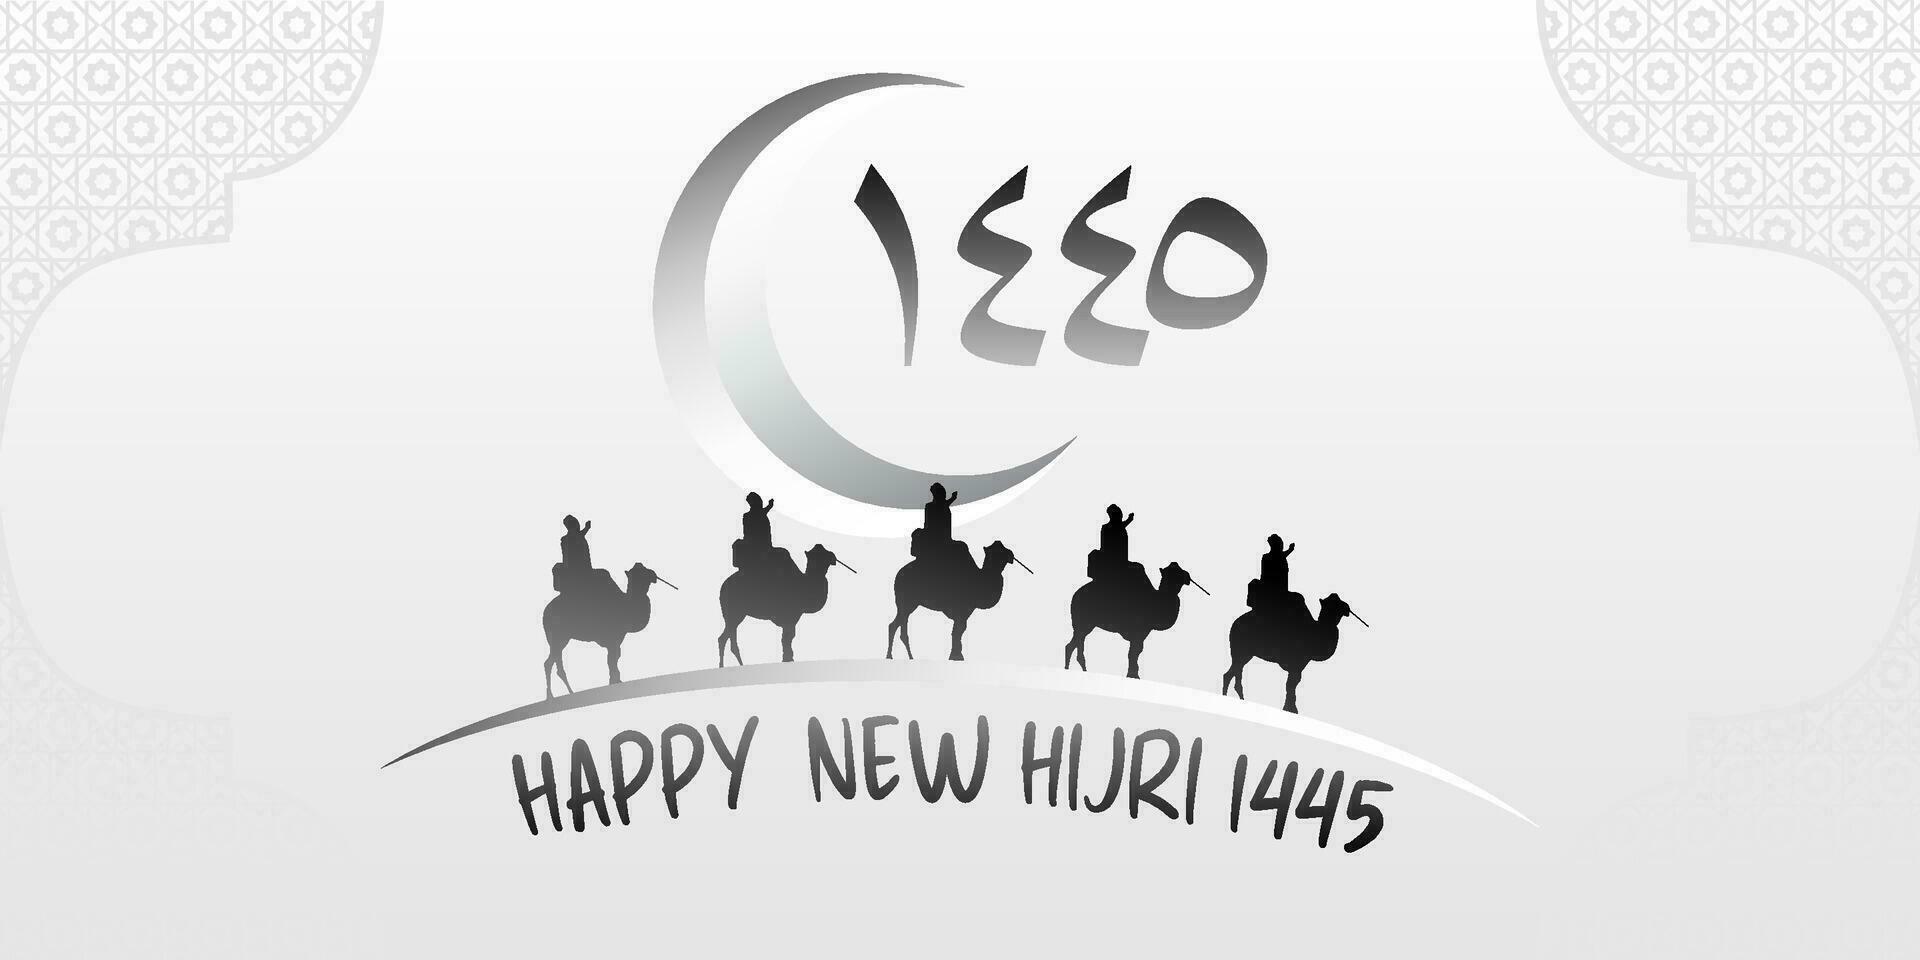 contento nuevo hijri año 1445 con Arábica carta, luna, islámico ornamento vector